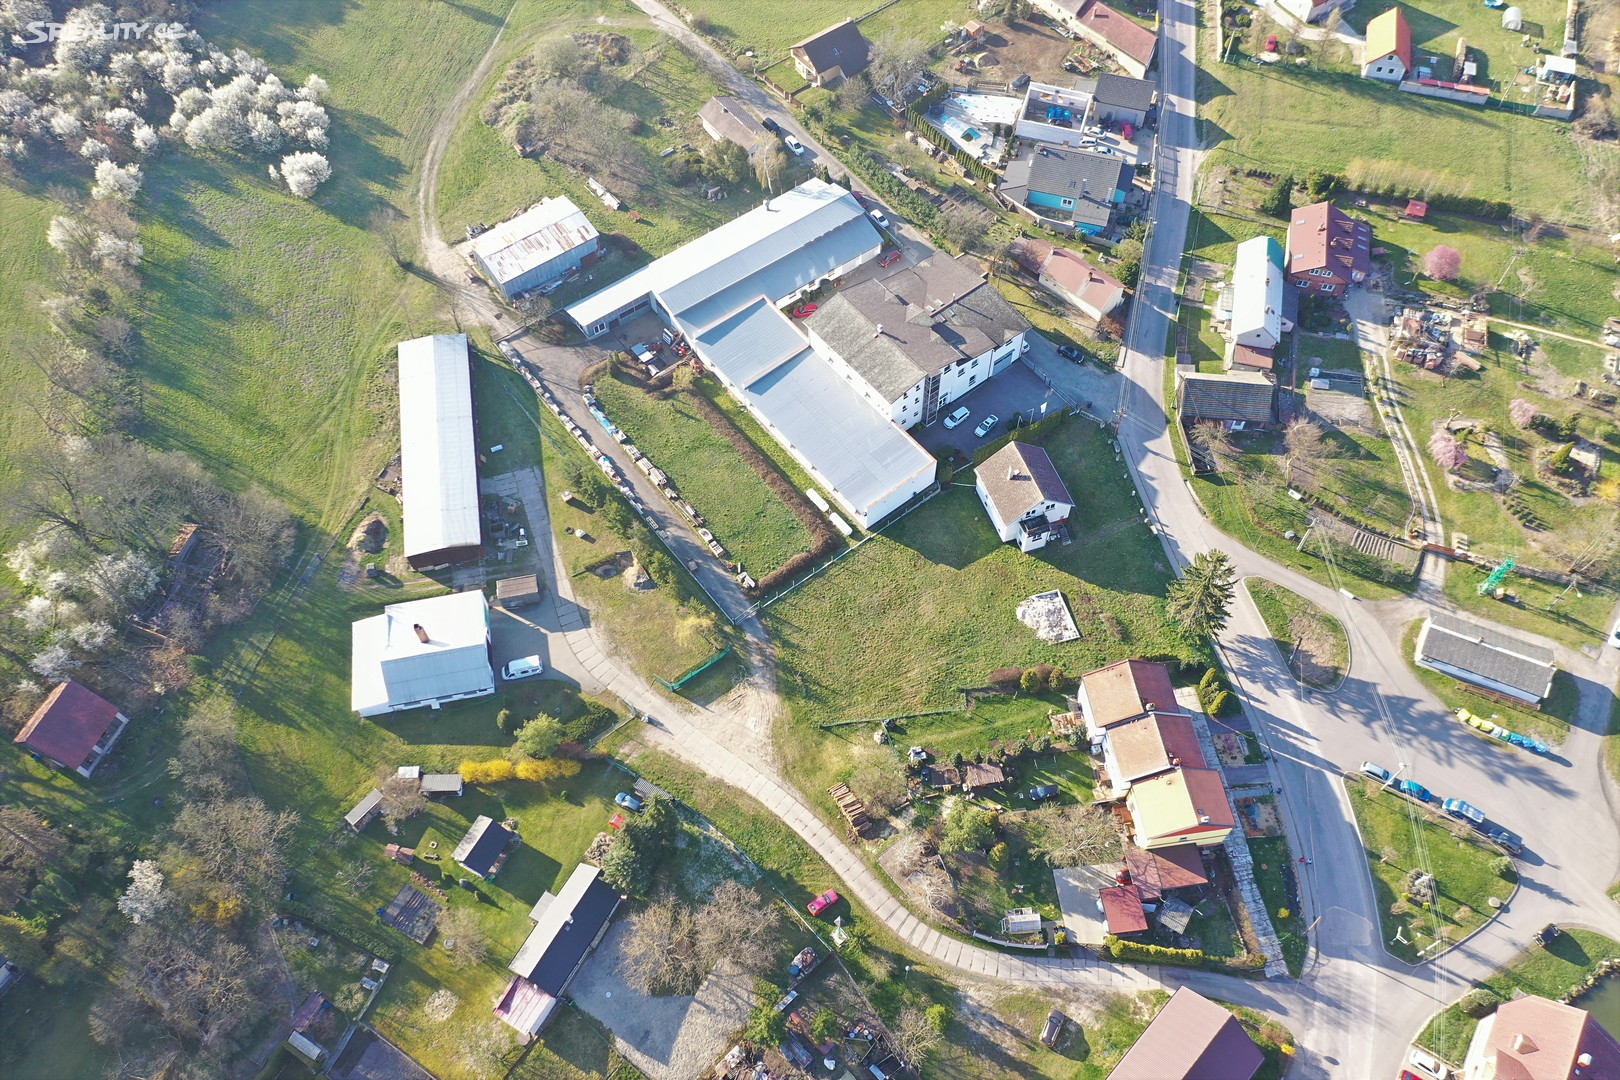 Prodej  stavebního pozemku 721 m², Obruby, okres Mladá Boleslav